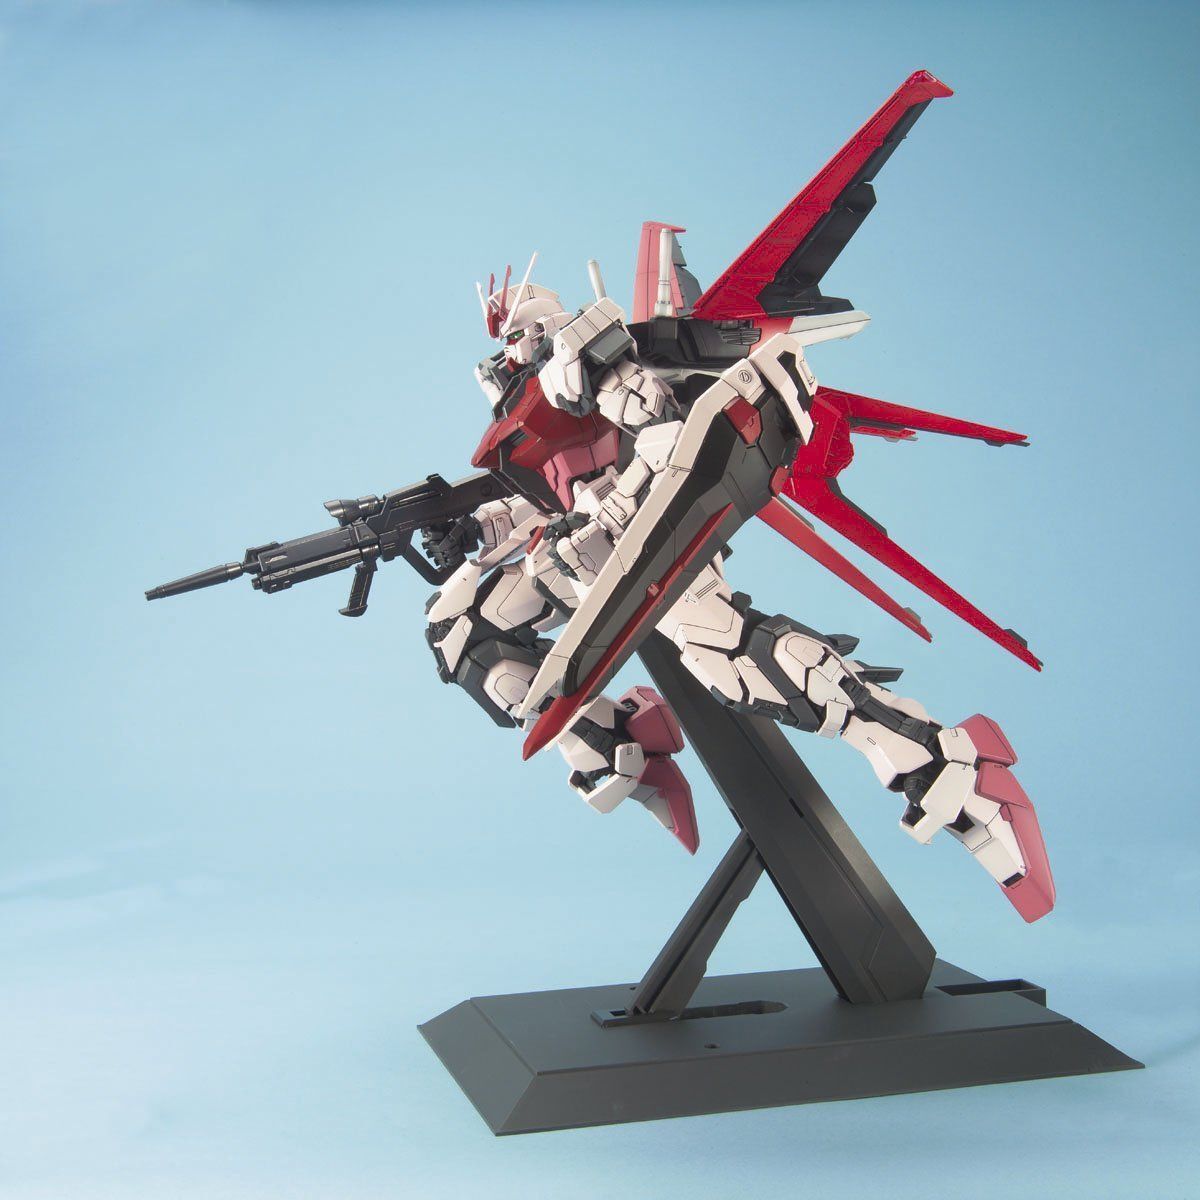 MBF-02 Strike Rouge + FX-550 Skygrasper Mobile Suit Gundam Seed Destiny PG 160 Scale Model Kit (4)